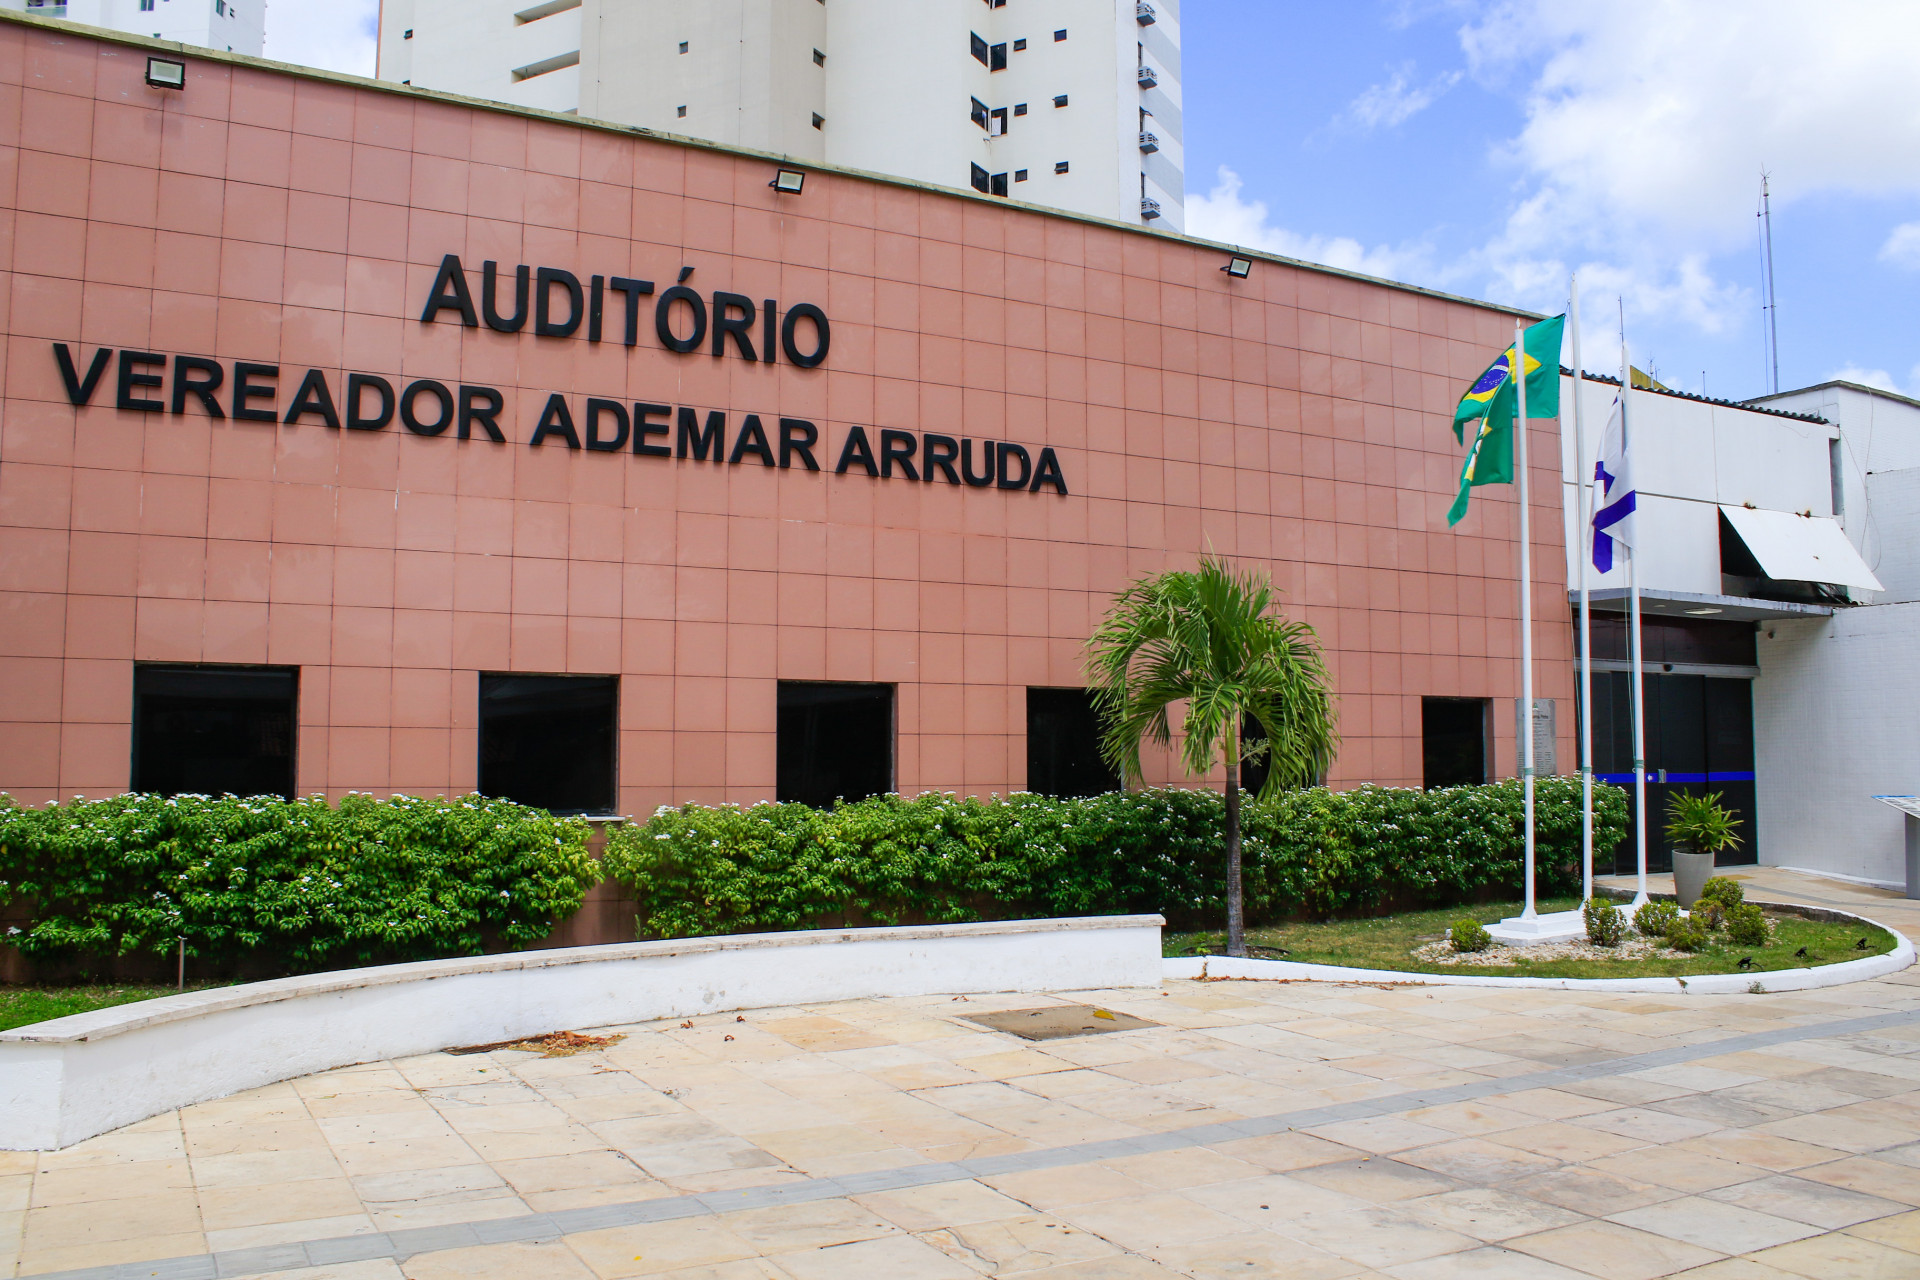 Fachada da Câmara Municipal de Fortaleza (Foto: THAÍS MESQUITA/ O POVO em 13/12/2022)